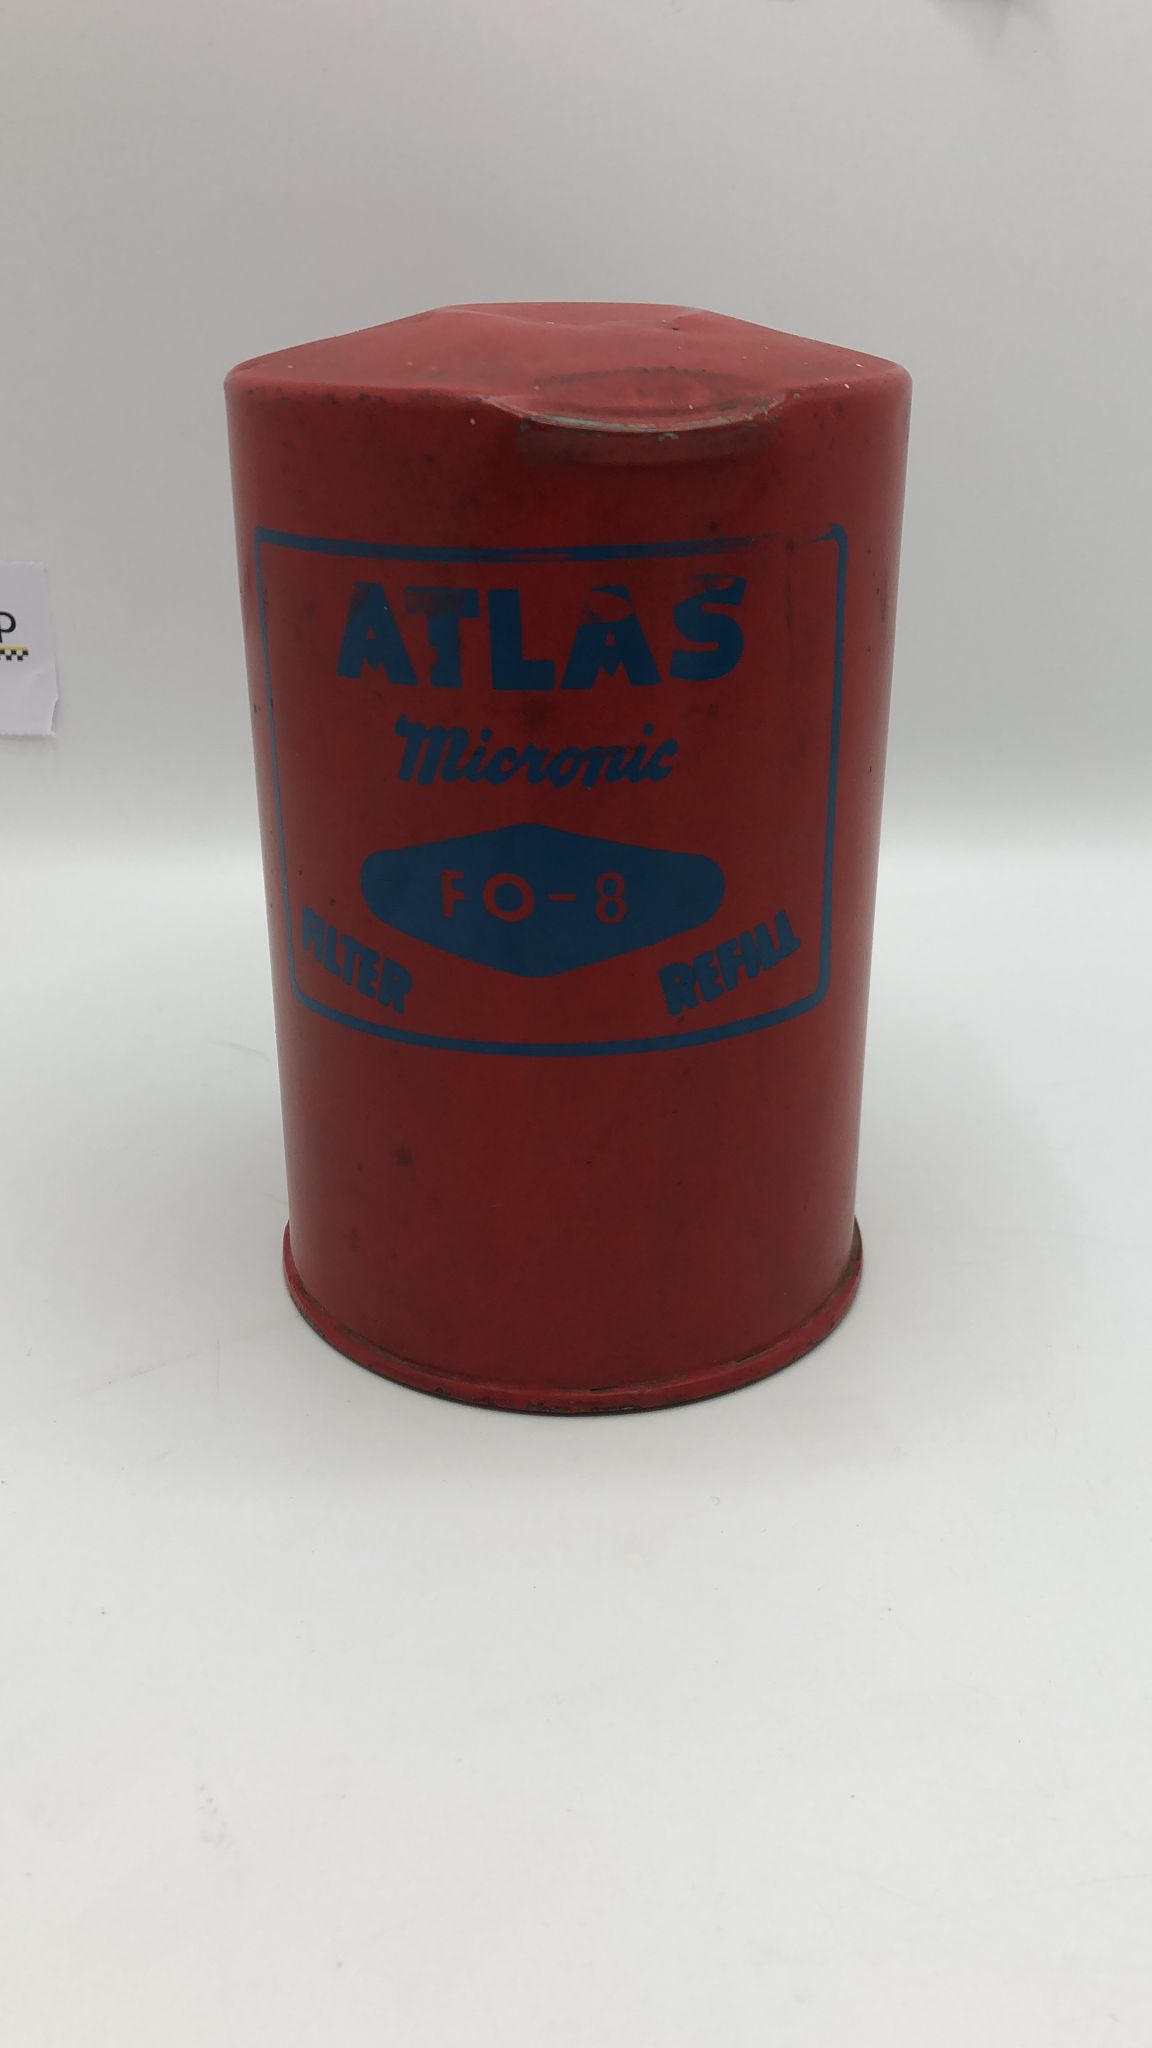 Atlas Micronic FO-8 Filtro Olio usato